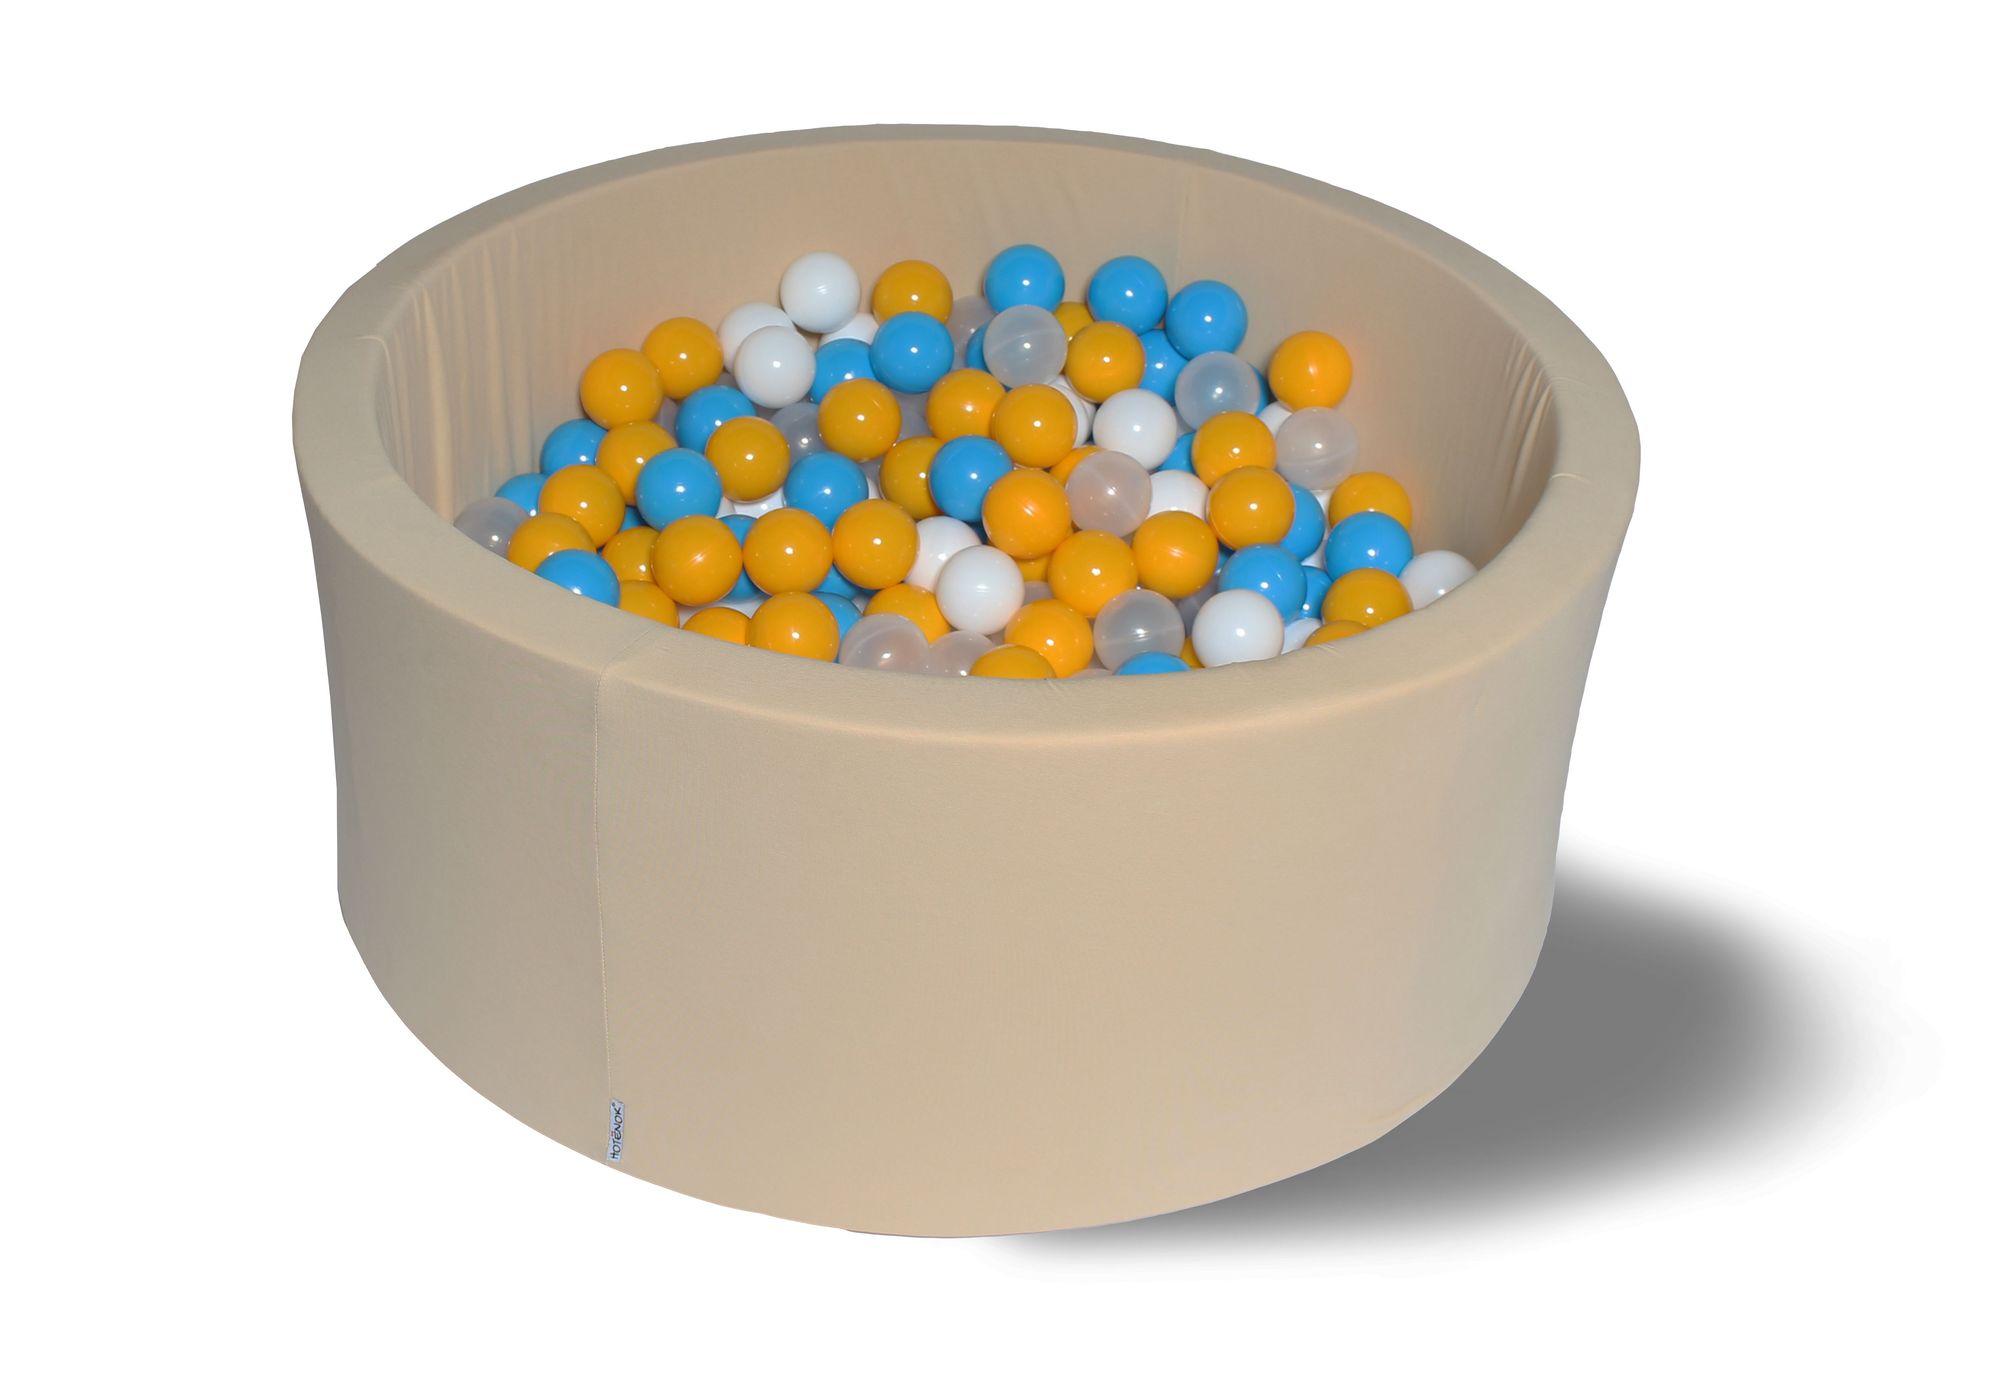 фото Сухой игровой бассейн жемчужная дискотека 40см с 200 шарами: голубой, желтый, белый, прозр hotenok